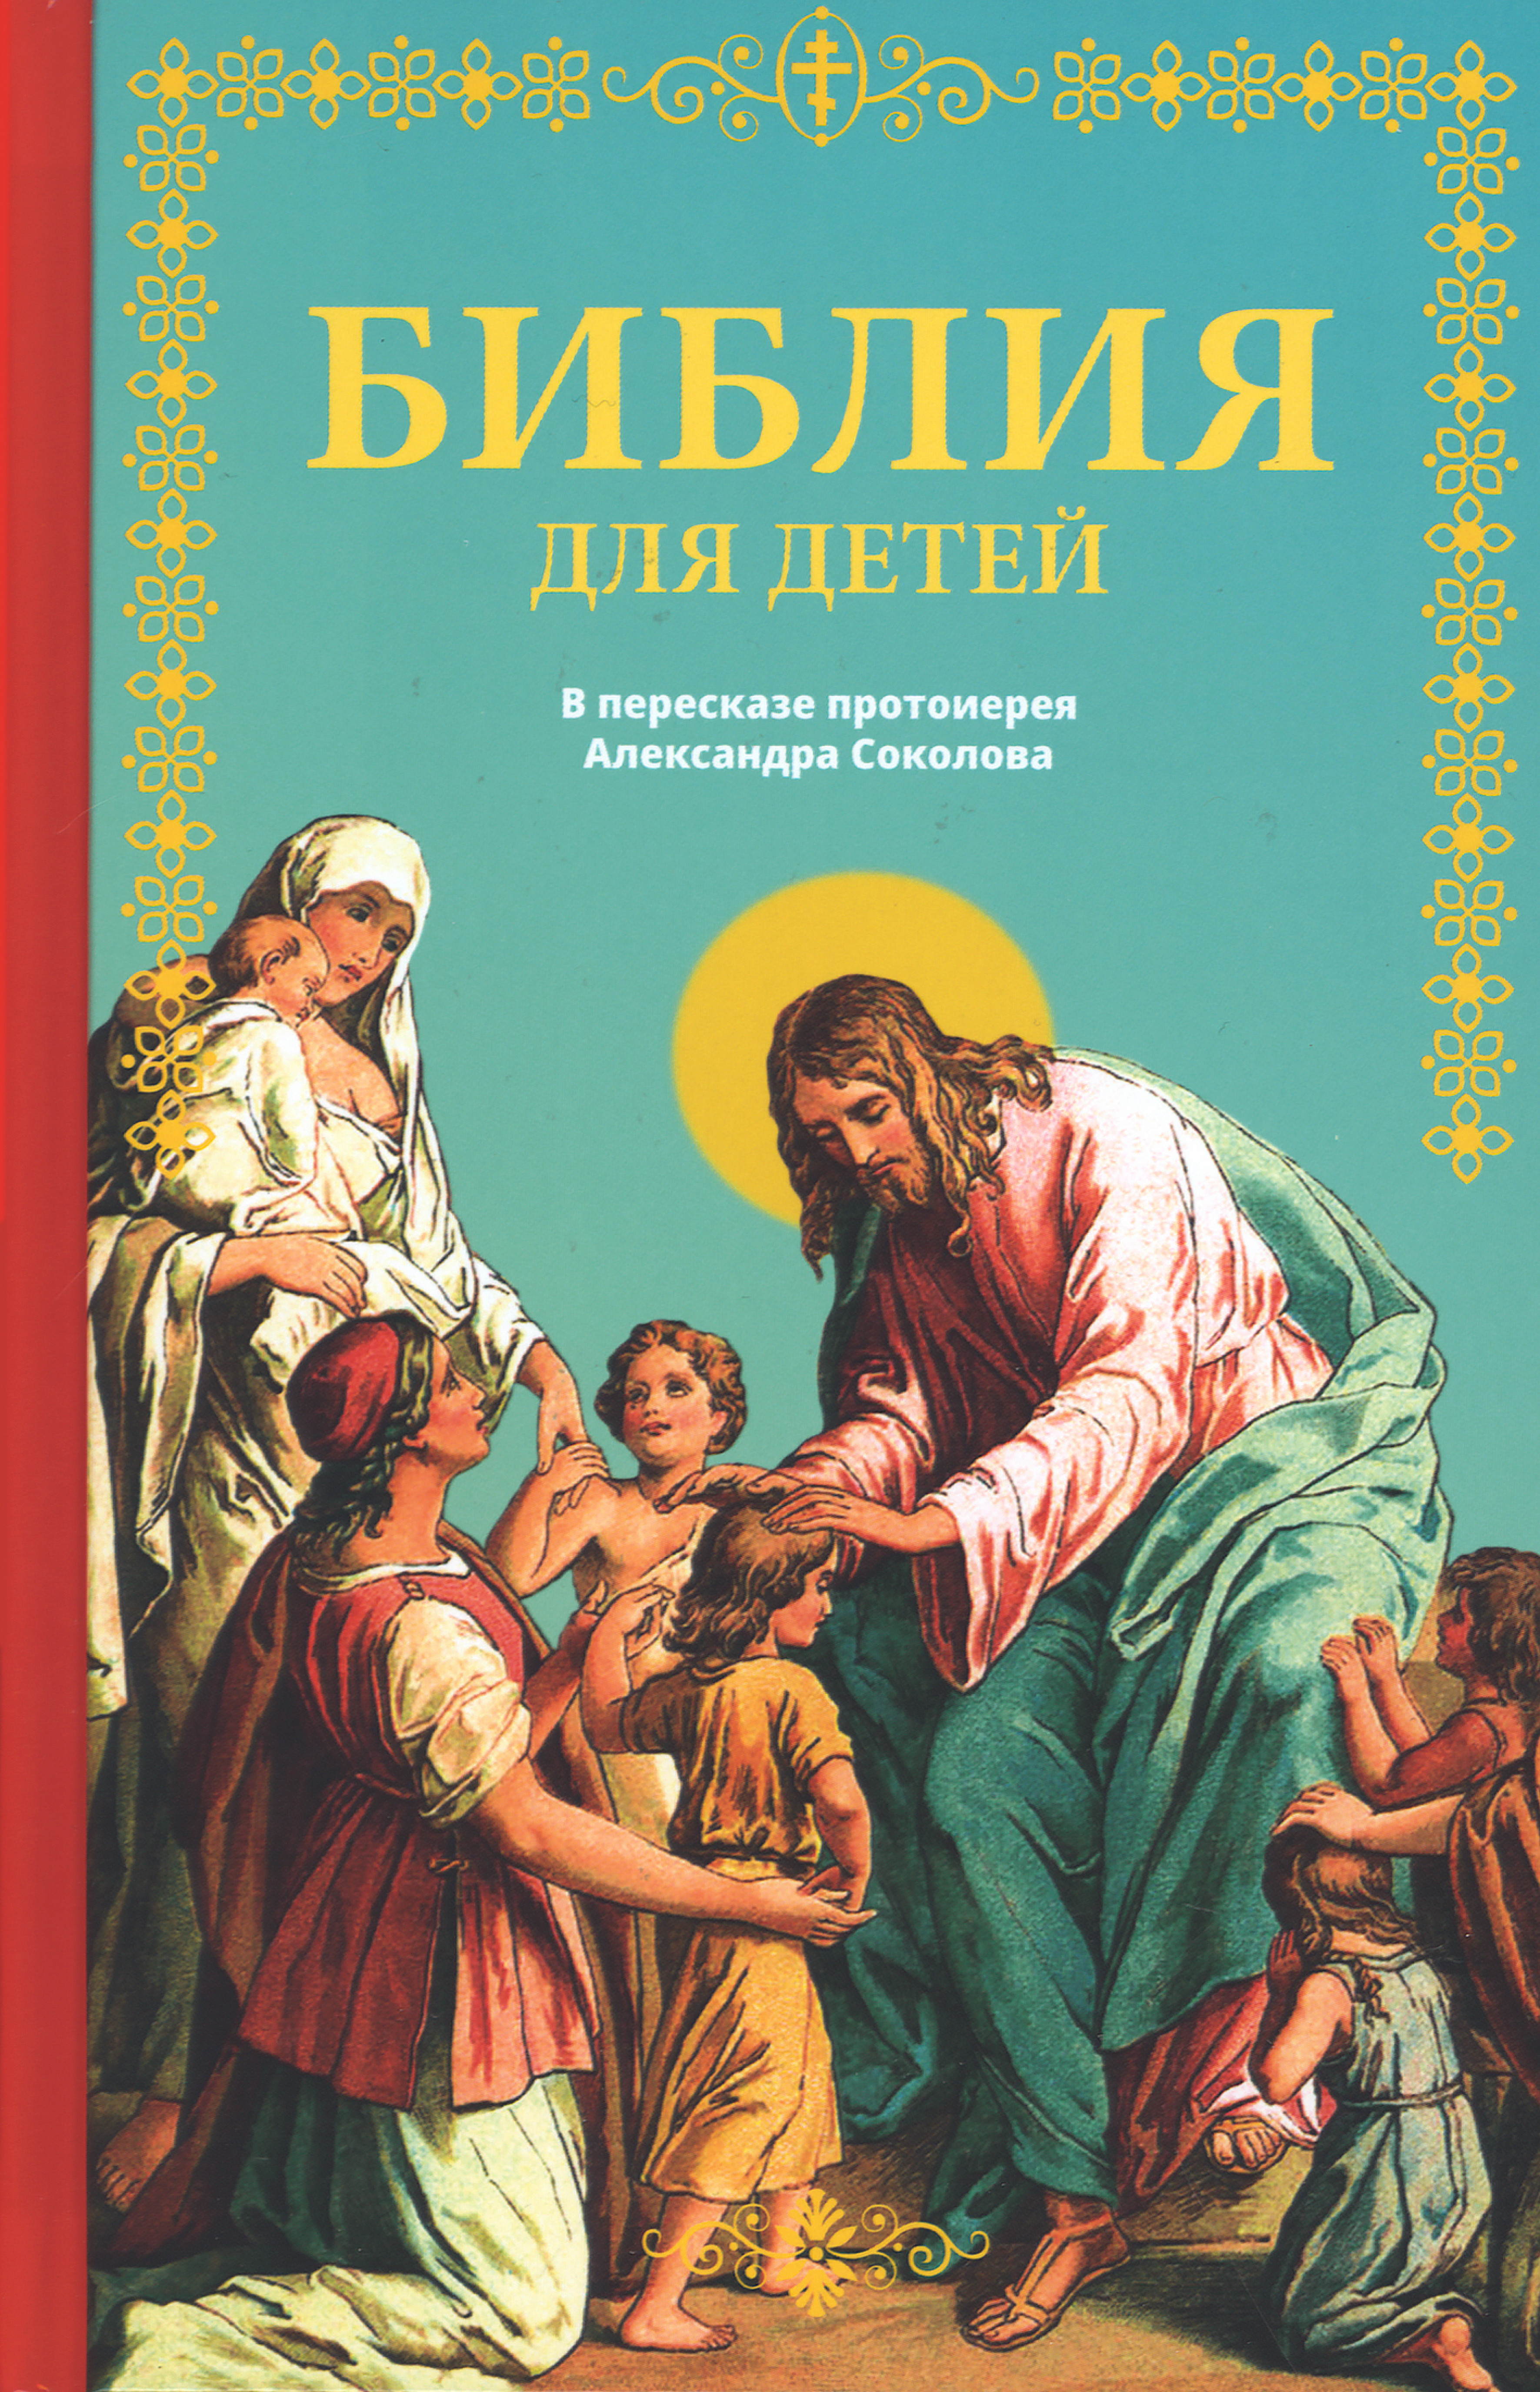 Библия для детей в пересказе протоиерея Александра Соколова